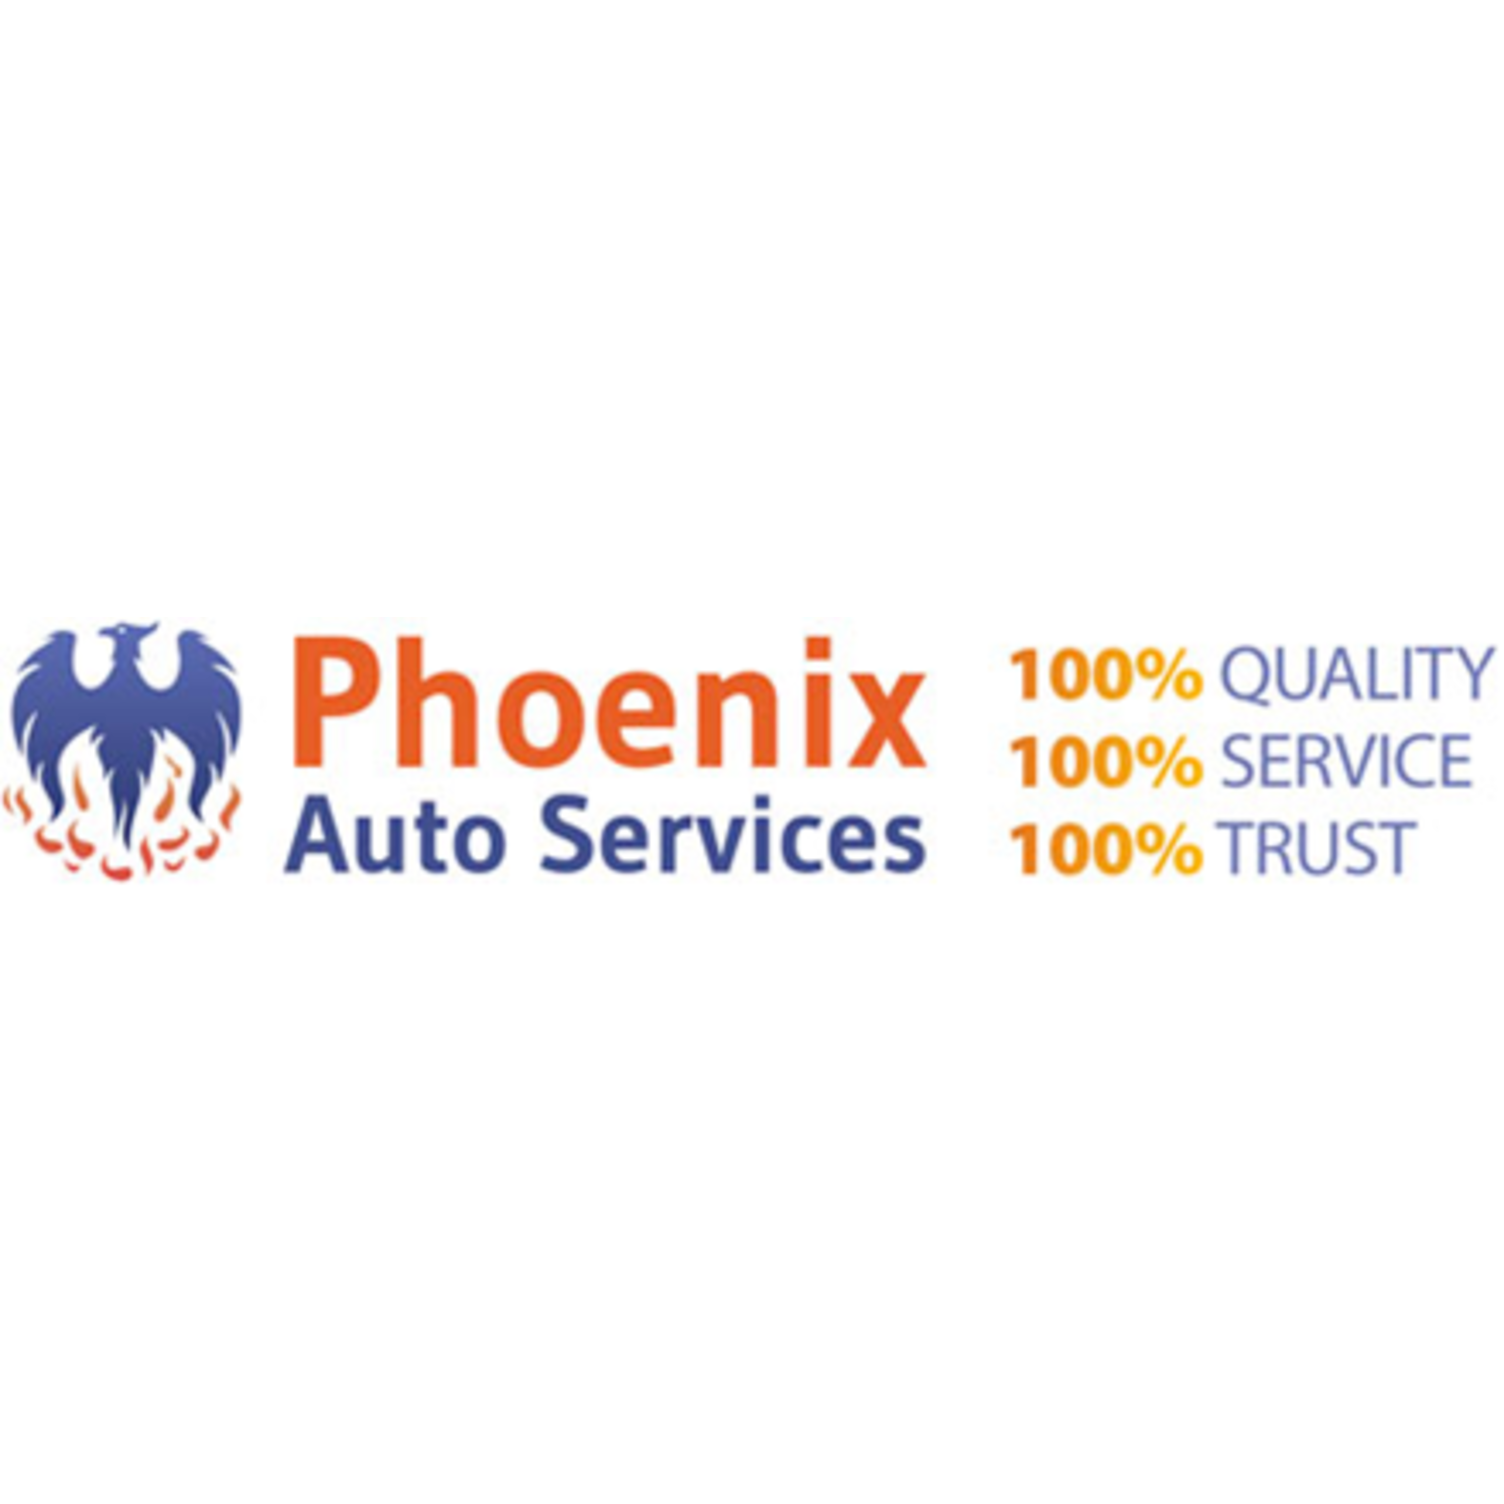 Phoenix Auto Services Ltd - Alresford, Hampshire SO24 9QF - 01962 736343 | ShowMeLocal.com